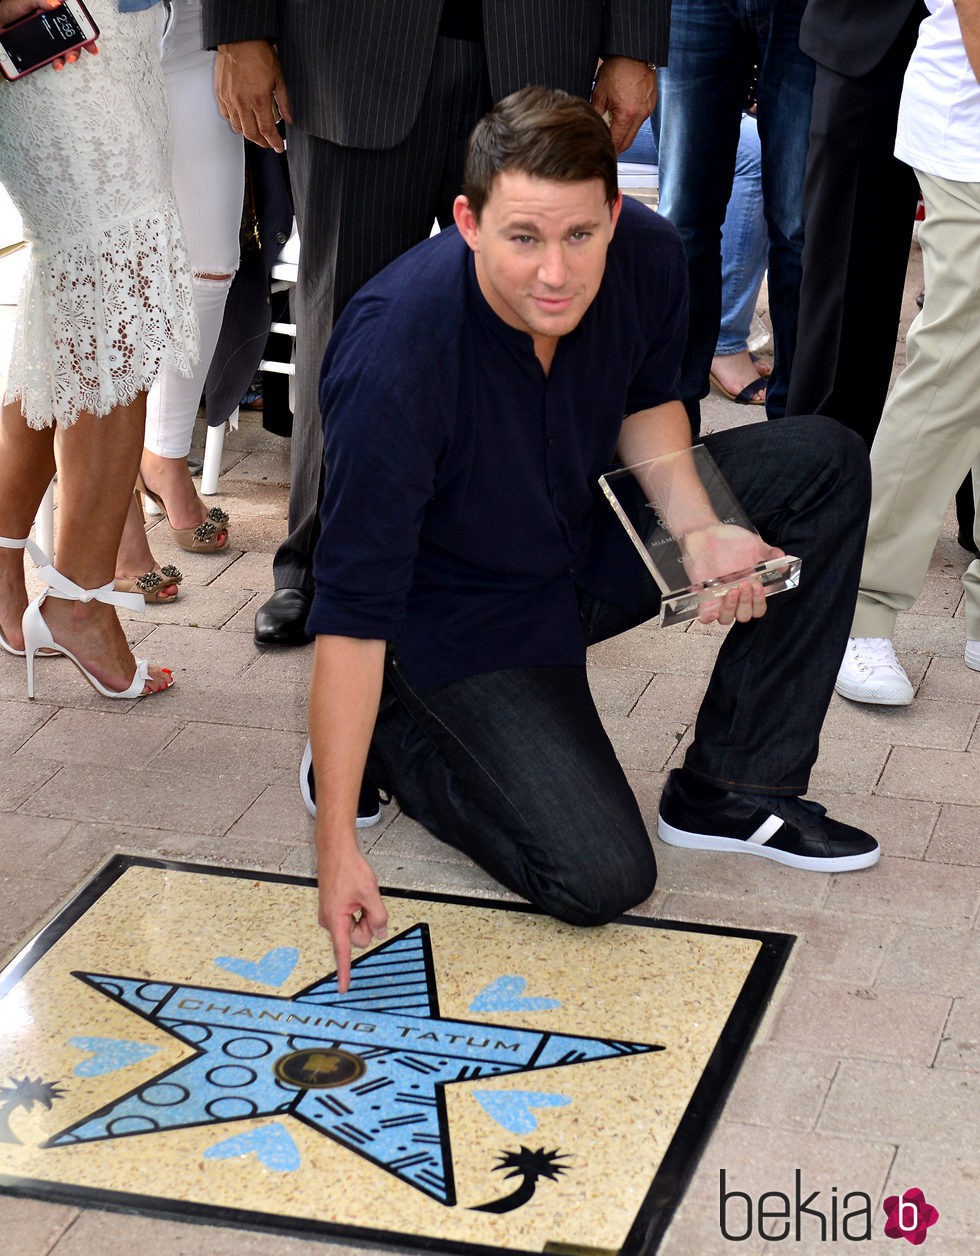 Channing Tatum recibe su estrella en el Paseo de la Fama de Miami